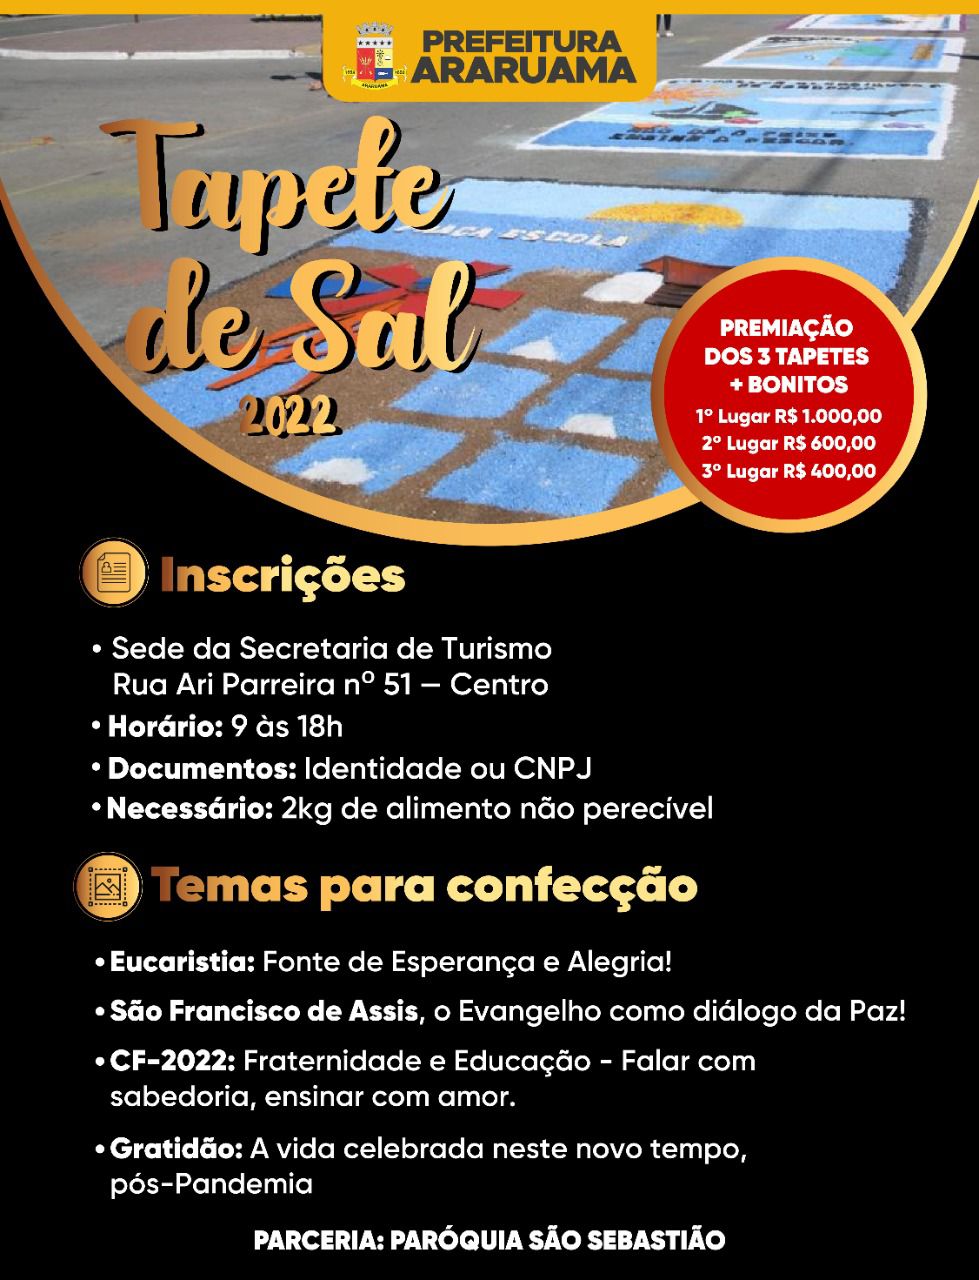 Prefeitura de Araruama abre inscrições para a confecção dos tapetes de sal em comemoração ao Corpus Christi